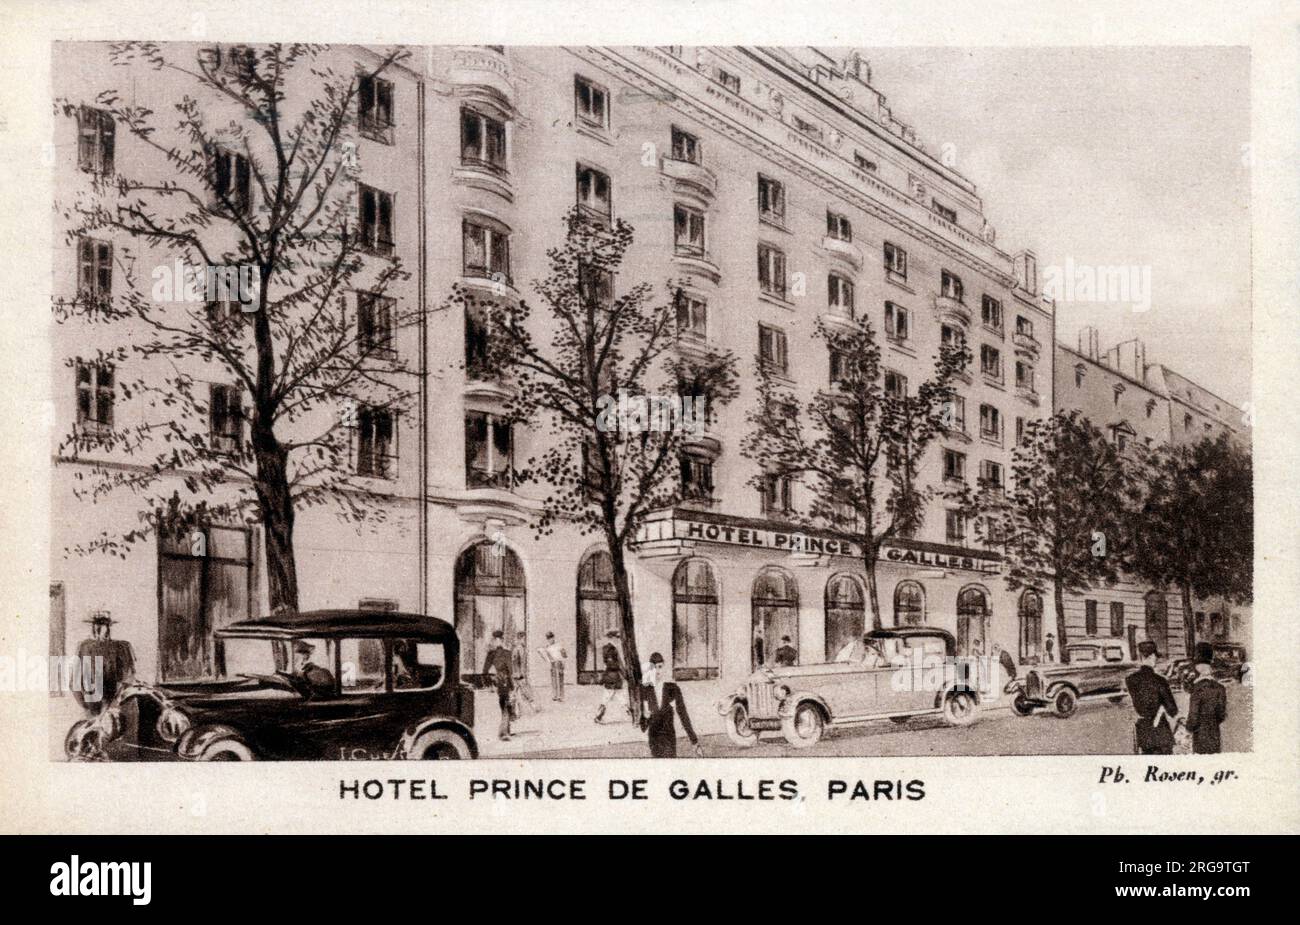 Hotel Prince de Galles (Prince of Wales Hotel), Paris, France Banque D'Images